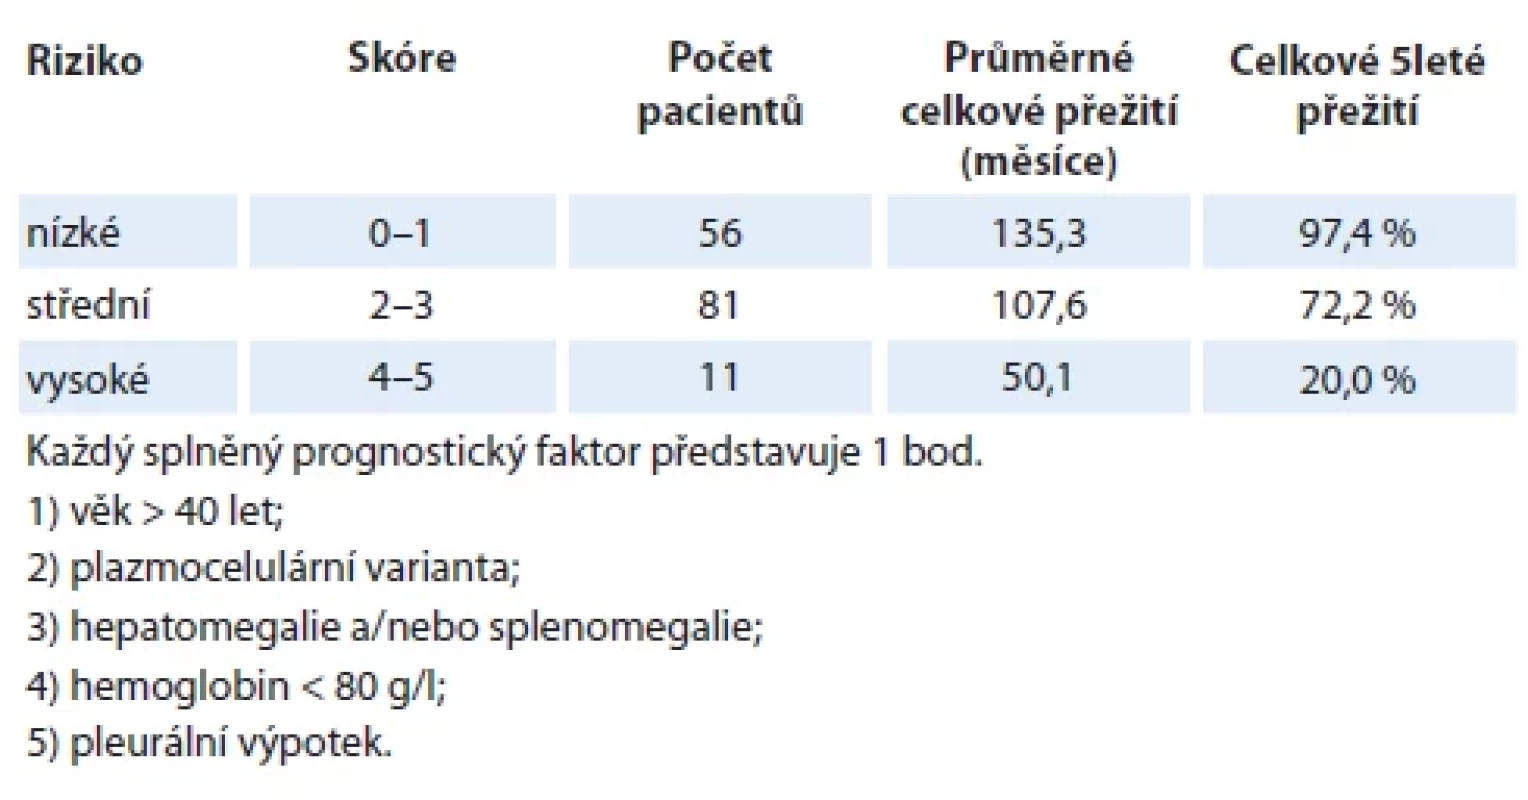 Mezinárodní prognostický index (IPI) pro idiopatickou multicentrickou Castlemanovu chorobu vypracovaný analýzou souboru 148 pacientů a verifi kovaný na souboru 197 pacientů [2].